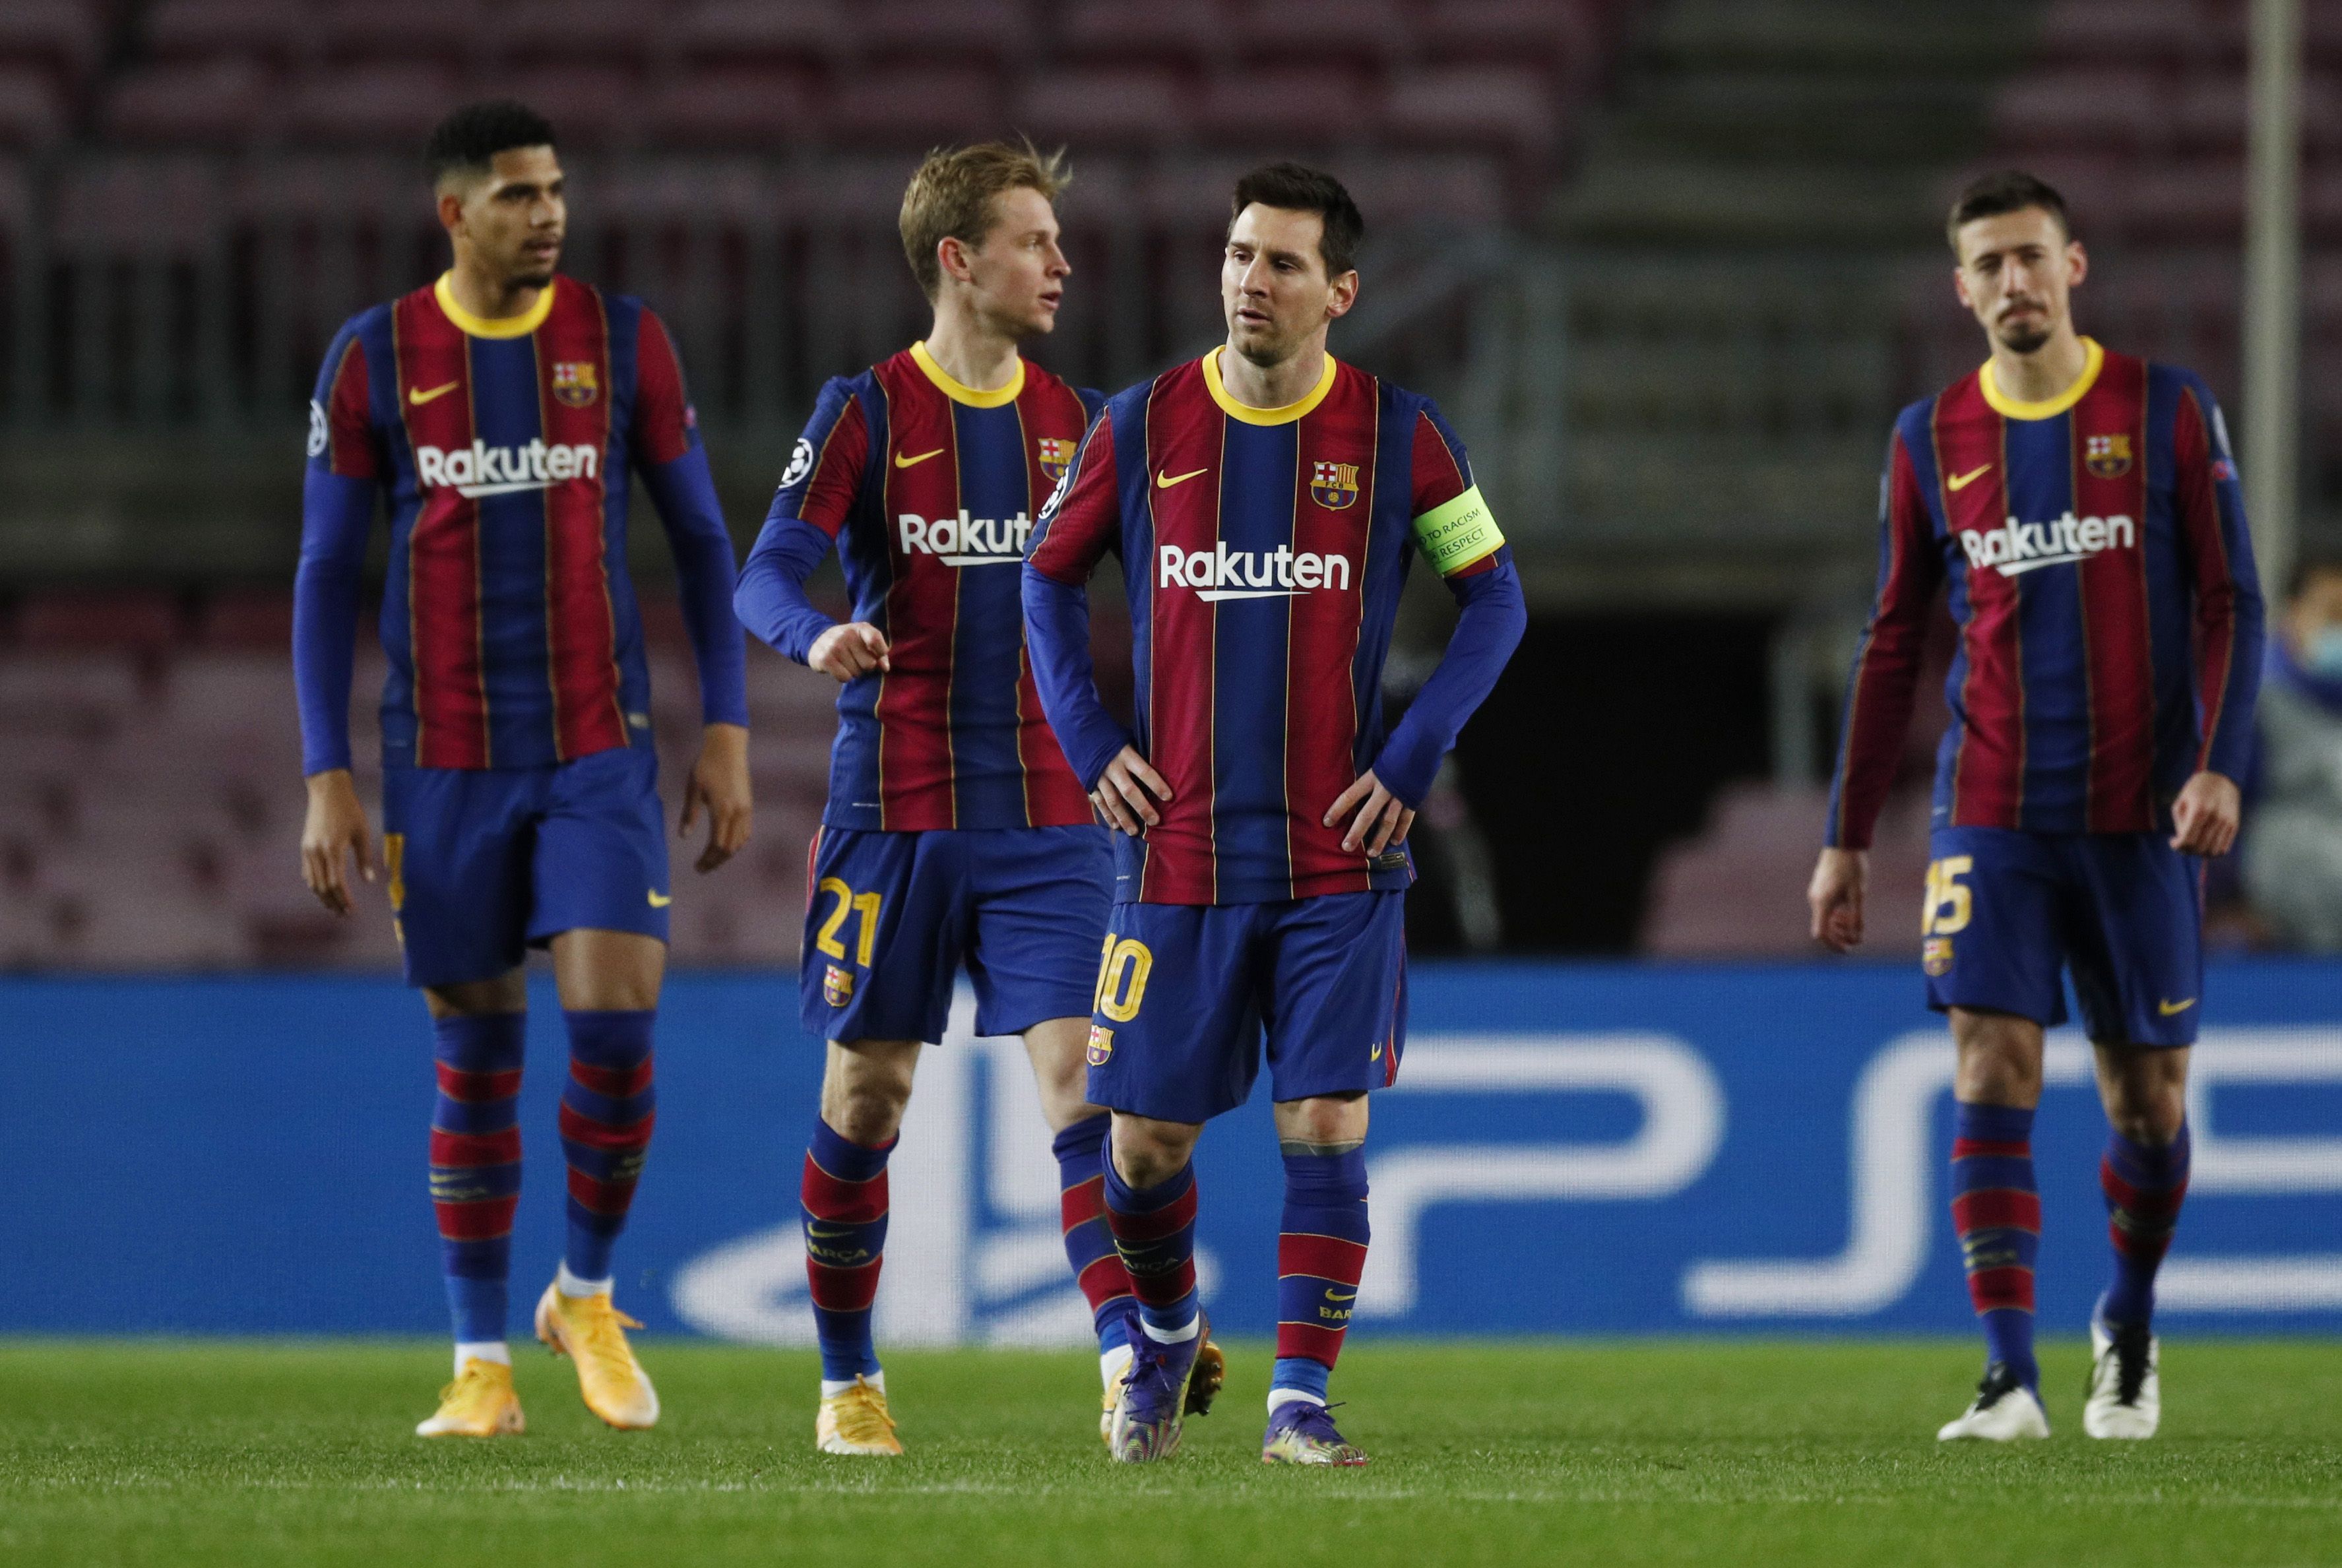 El Barcelona de Lionel Messi no pudo asegurar el liderazgo en su grupo de la Champions (REUTERS)